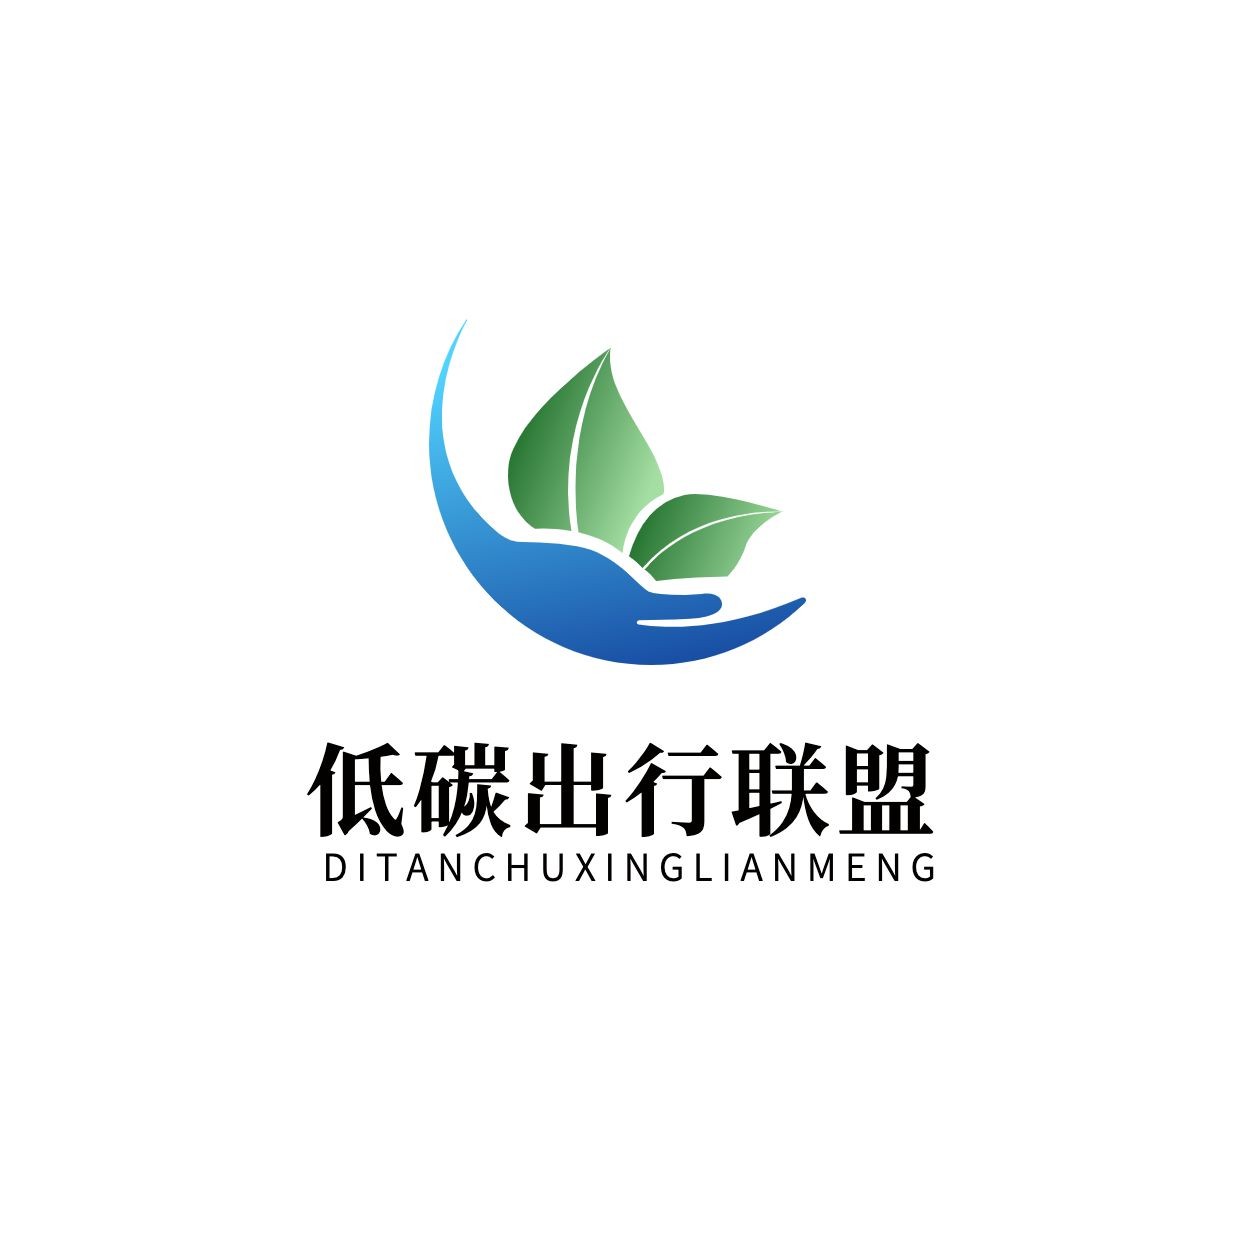 旅游自媒体公益环保宣传logo设计